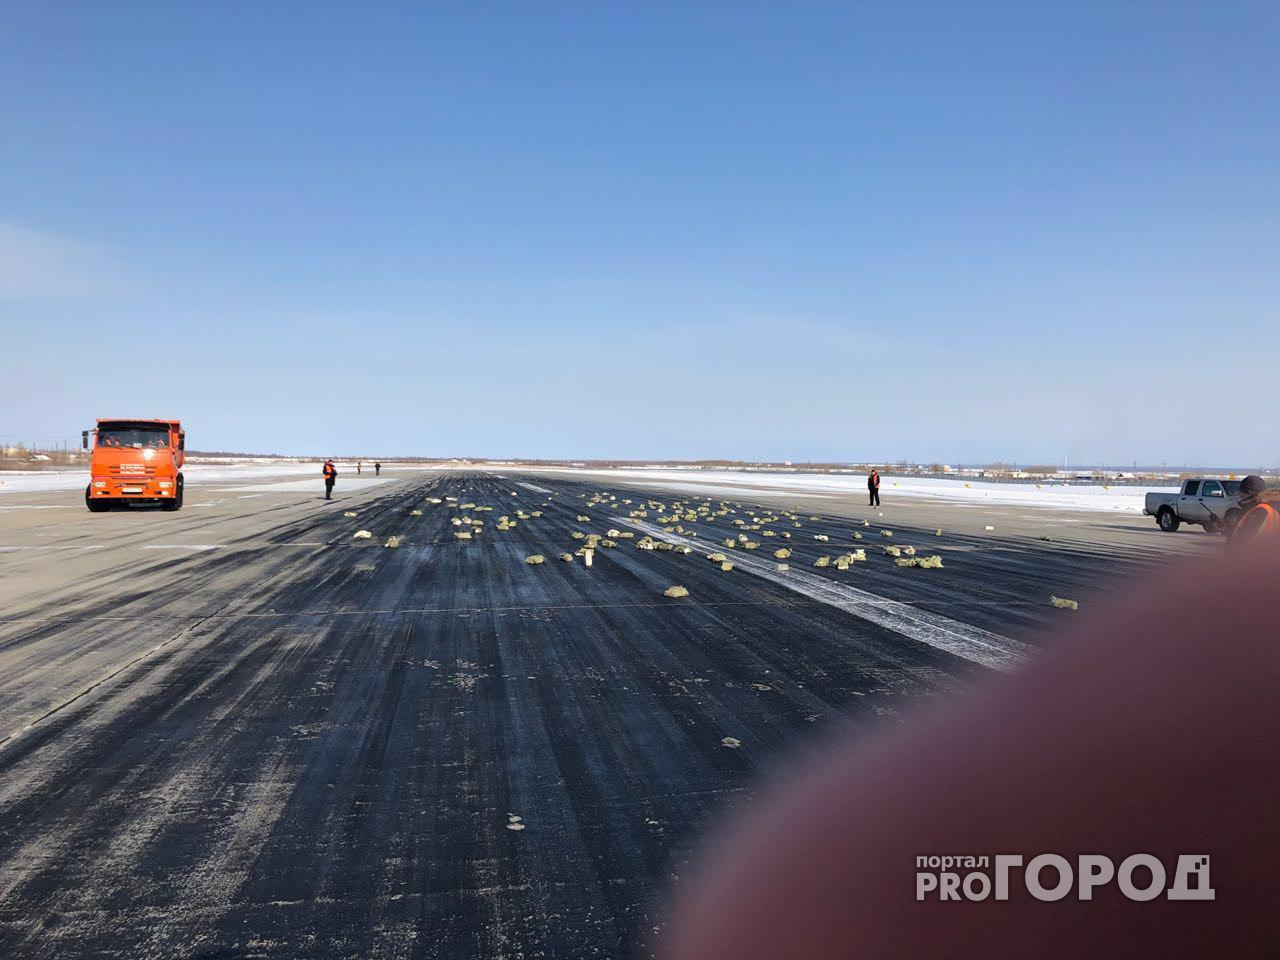 В аэропорту Якутска из самолета выпало около 200 слитков драгоценного металла